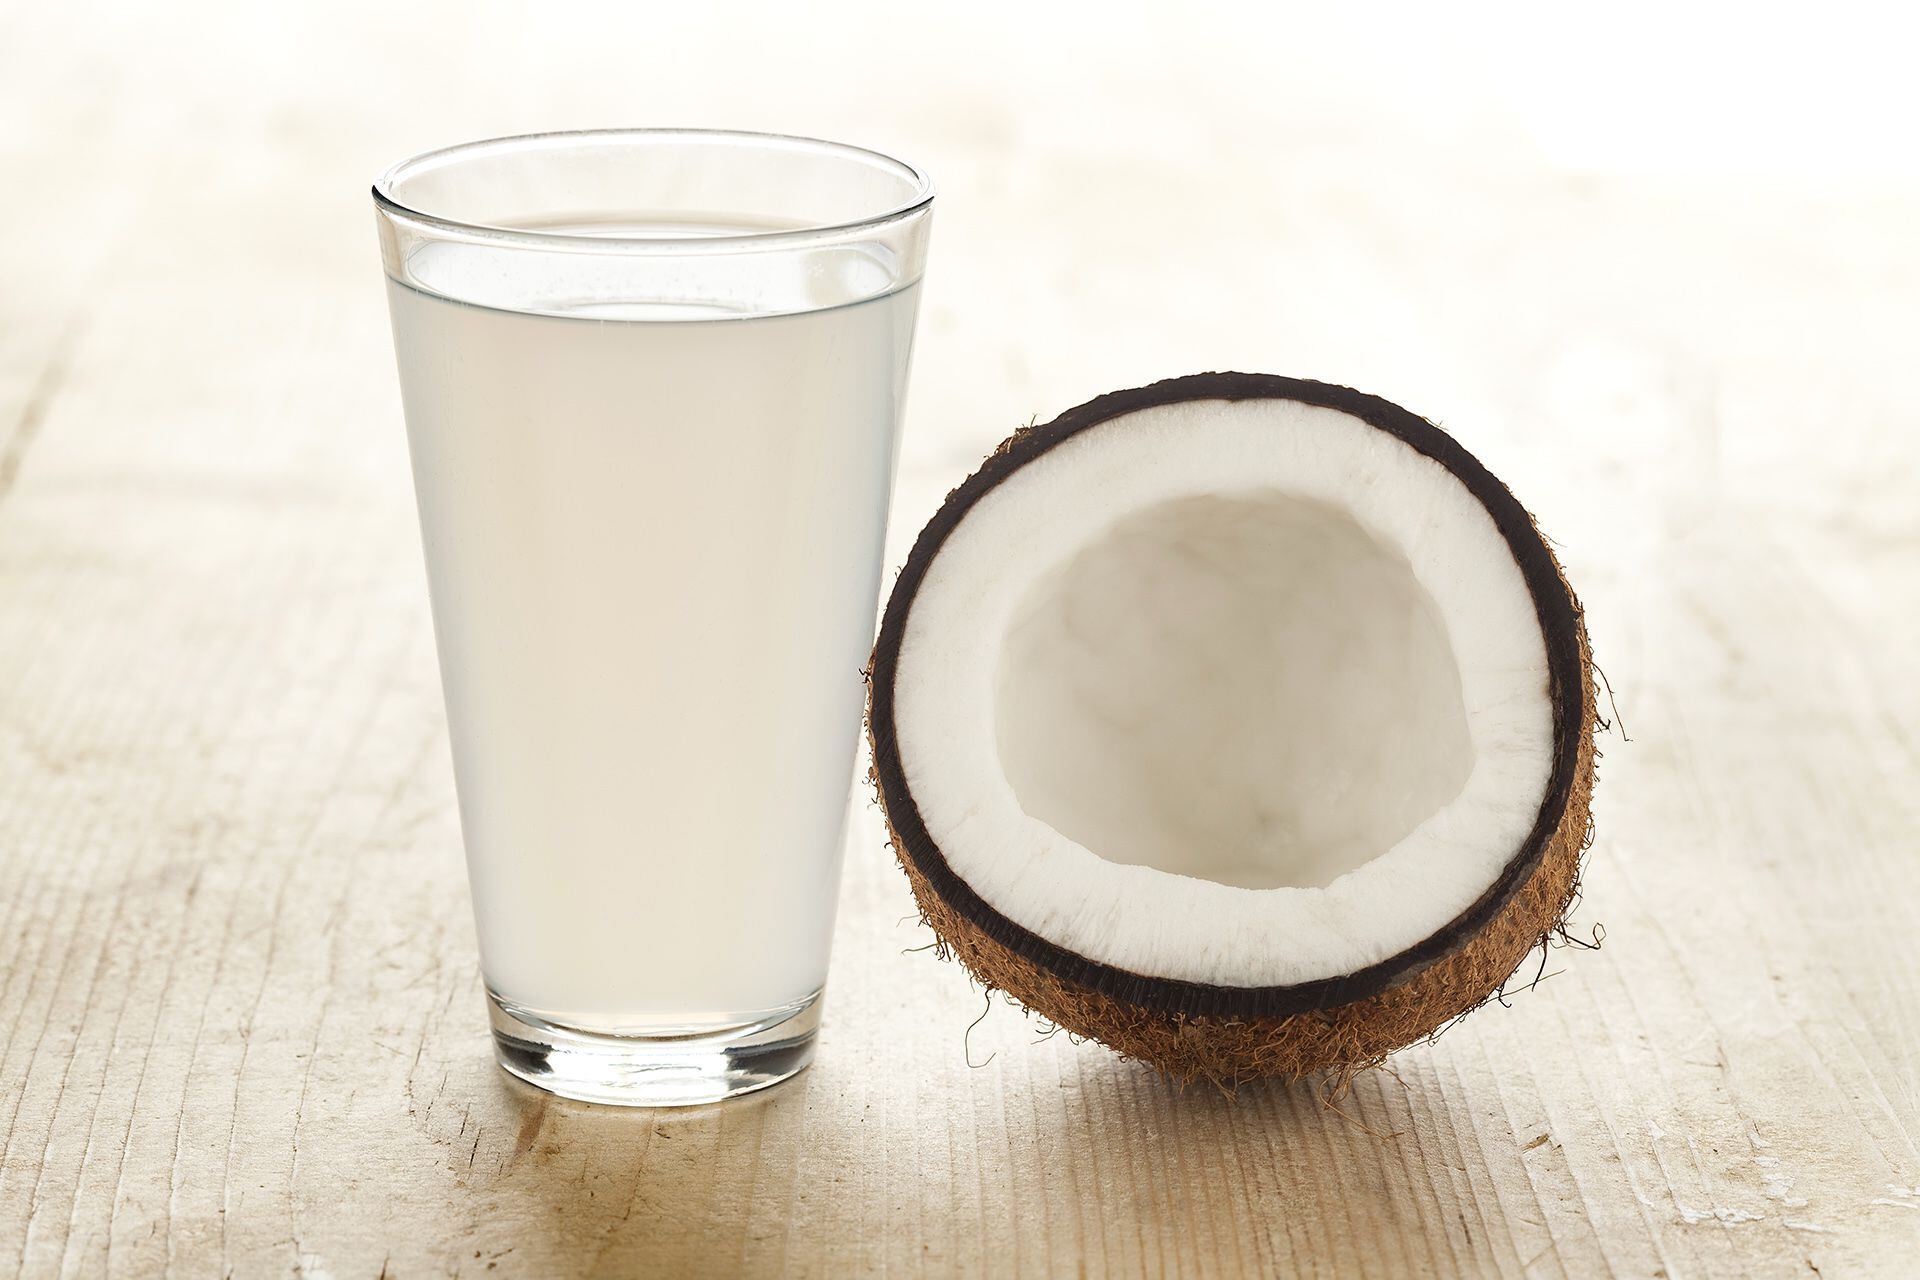 El coco tiene potasio, fósforo, magnesio y calcio en su composición nutricional (Getty)